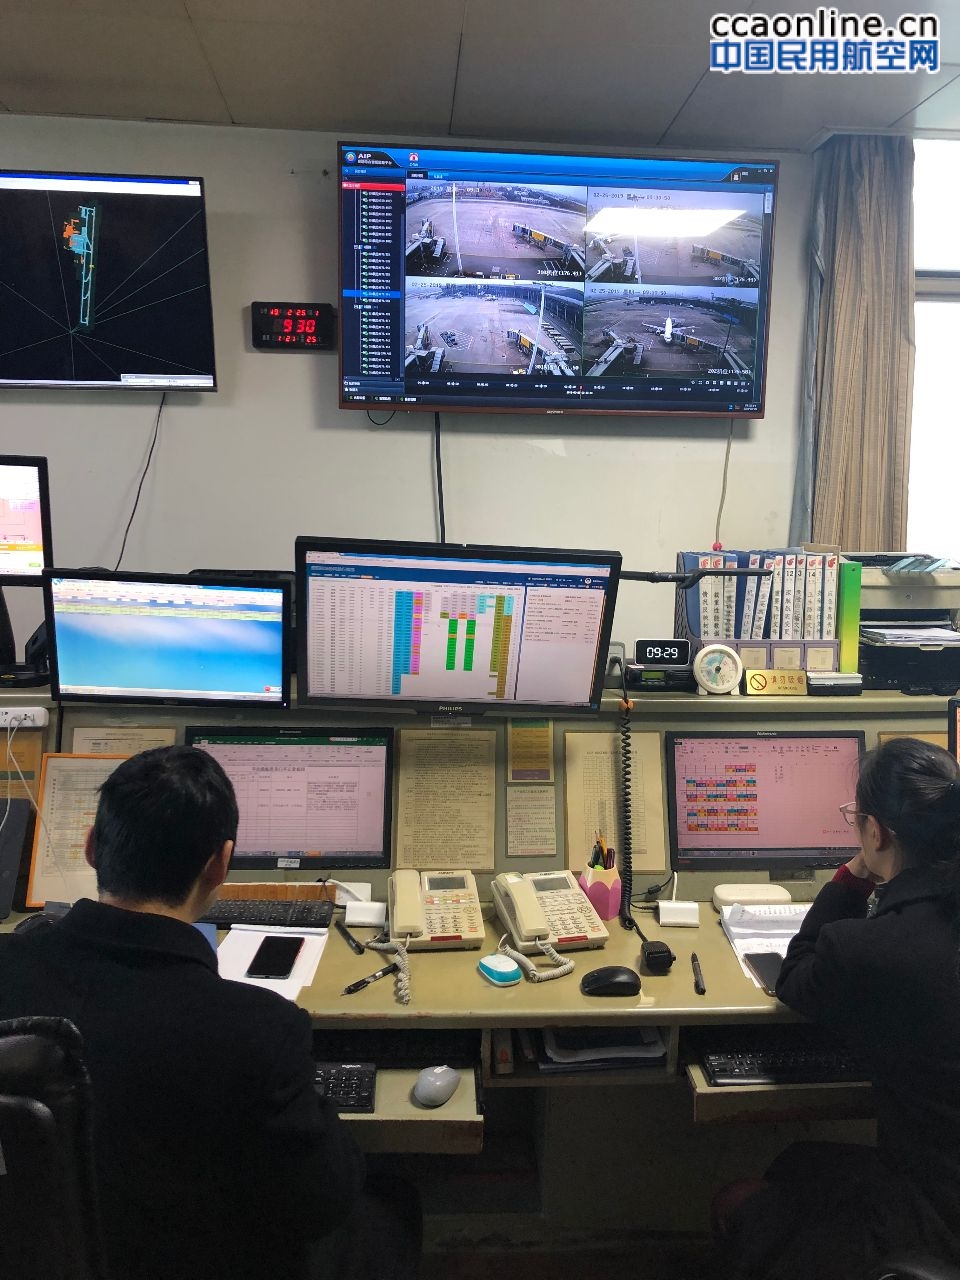 贵州空管分局塔台管制室新进管制员赴机场和航空公司学习交流